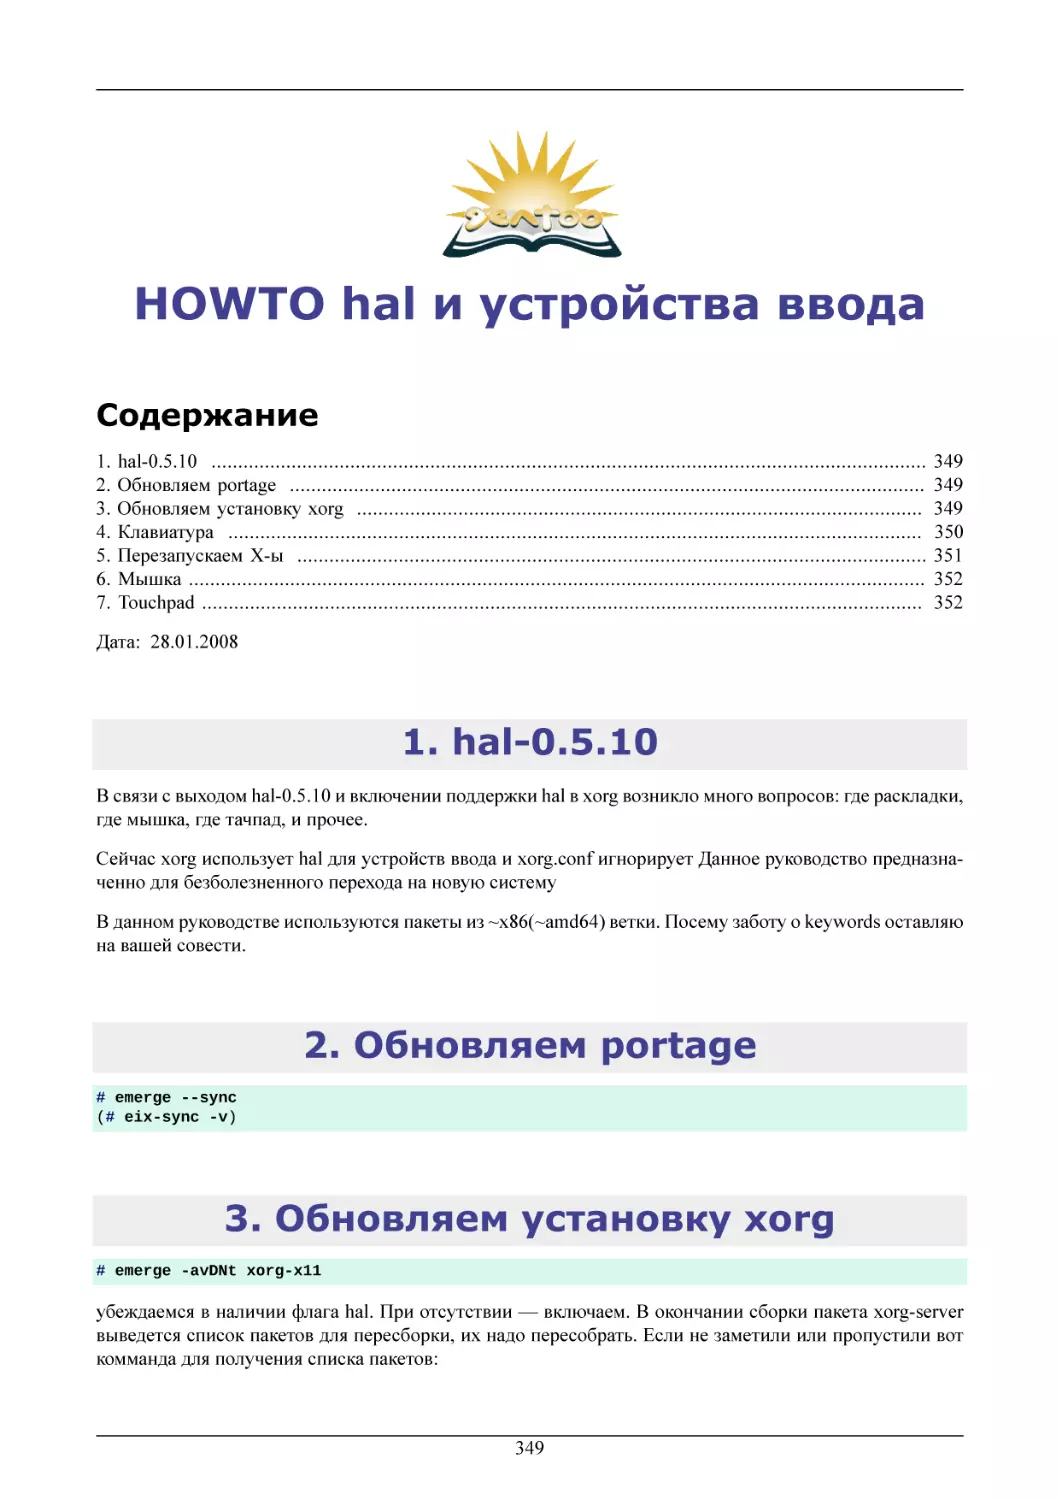 HOWTO hal и устройства ввода
hal-0.5.10
Обновляем portage
Обновляем установку xorg